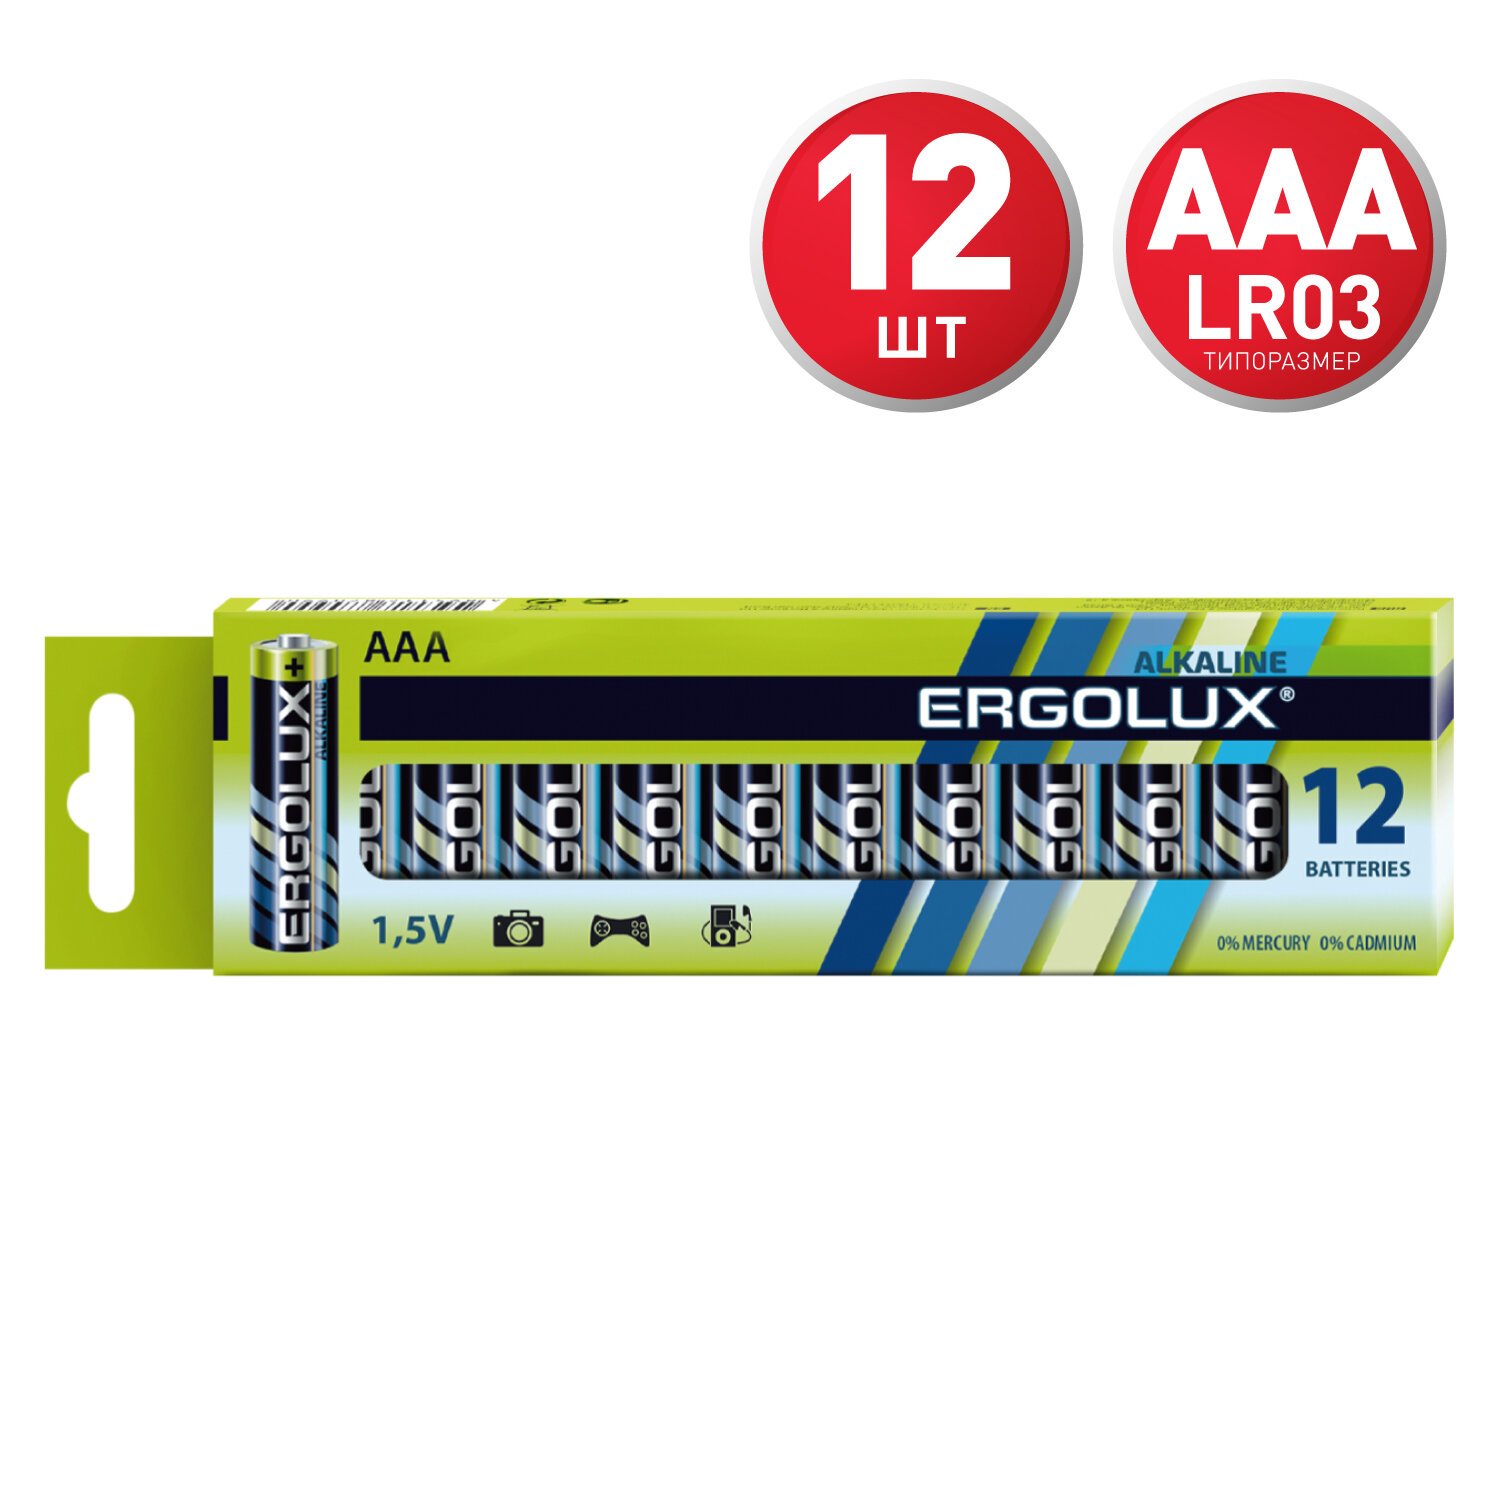 Батарейки AАА Ergolux LR03 1,5 В , алкалиновые 12 штук в упаковке